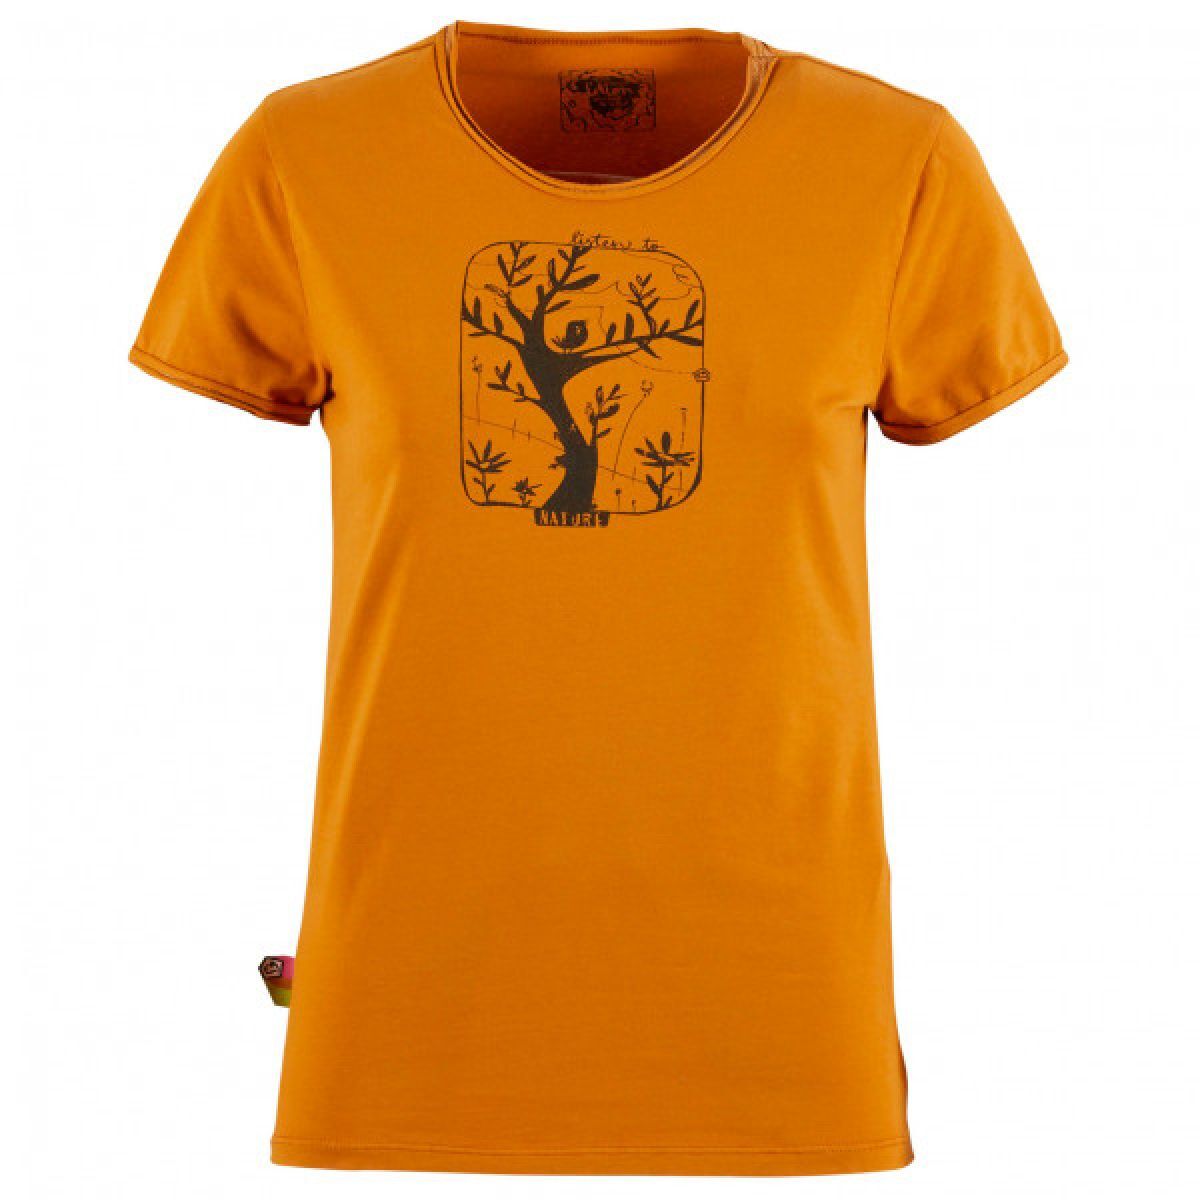 E9 Birdy - T-shirt - Women's